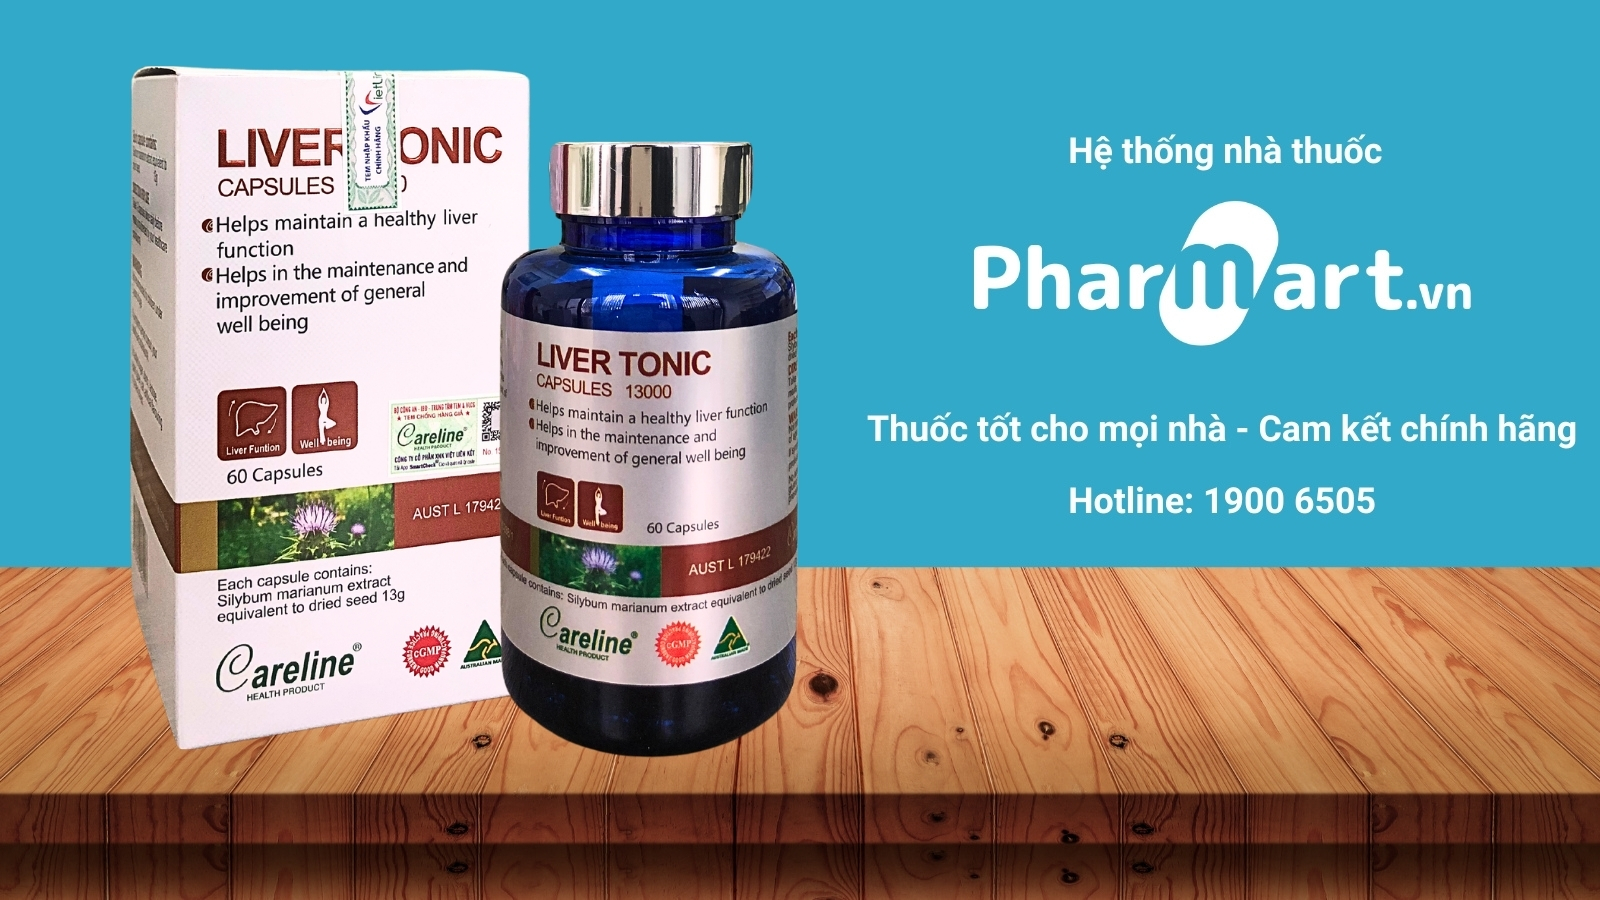 Liver Tonic hiện đang được bán chính hãng tại Nhà thuốc Pharmart.vn